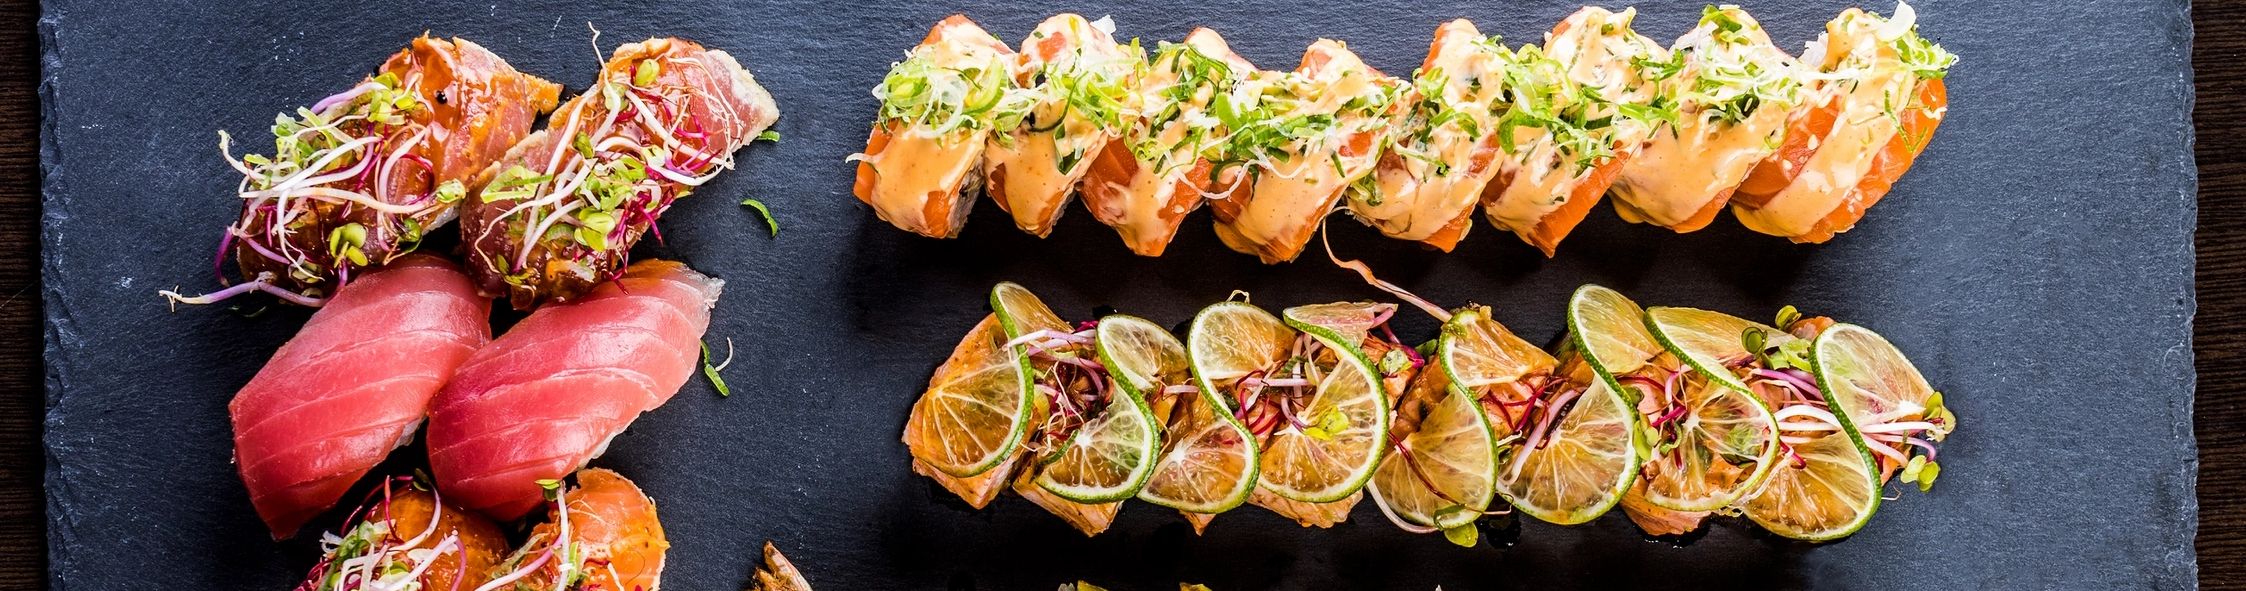 Best sushi restaurants in valencia